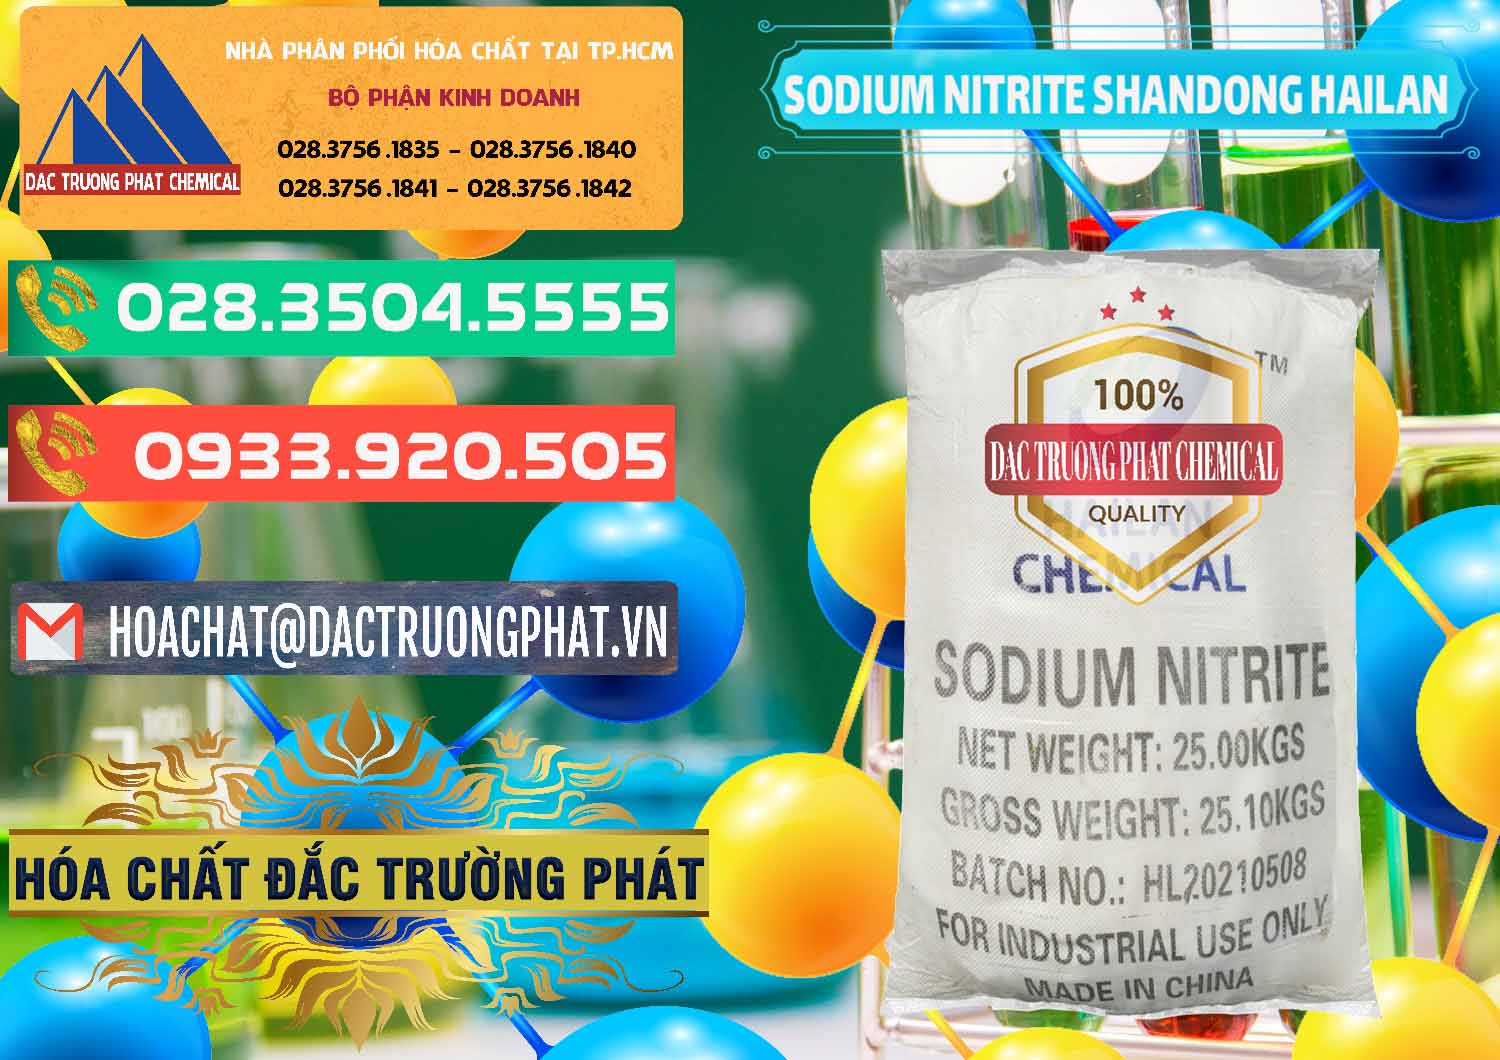 Chuyên bán _ cung ứng Sodium Nitrite - NANO2 99.3% Shandong Hailan Trung Quốc China - 0284 - Công ty kinh doanh và phân phối hóa chất tại TP.HCM - congtyhoachat.com.vn